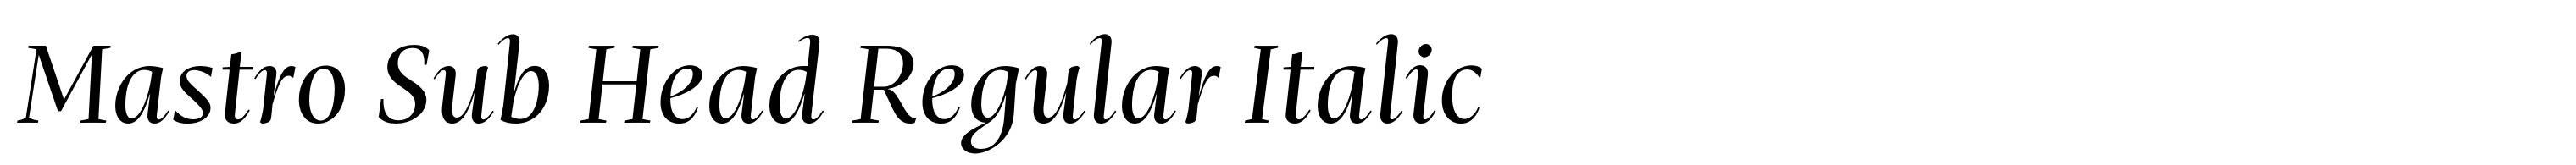 Mastro Sub Head Regular Italic